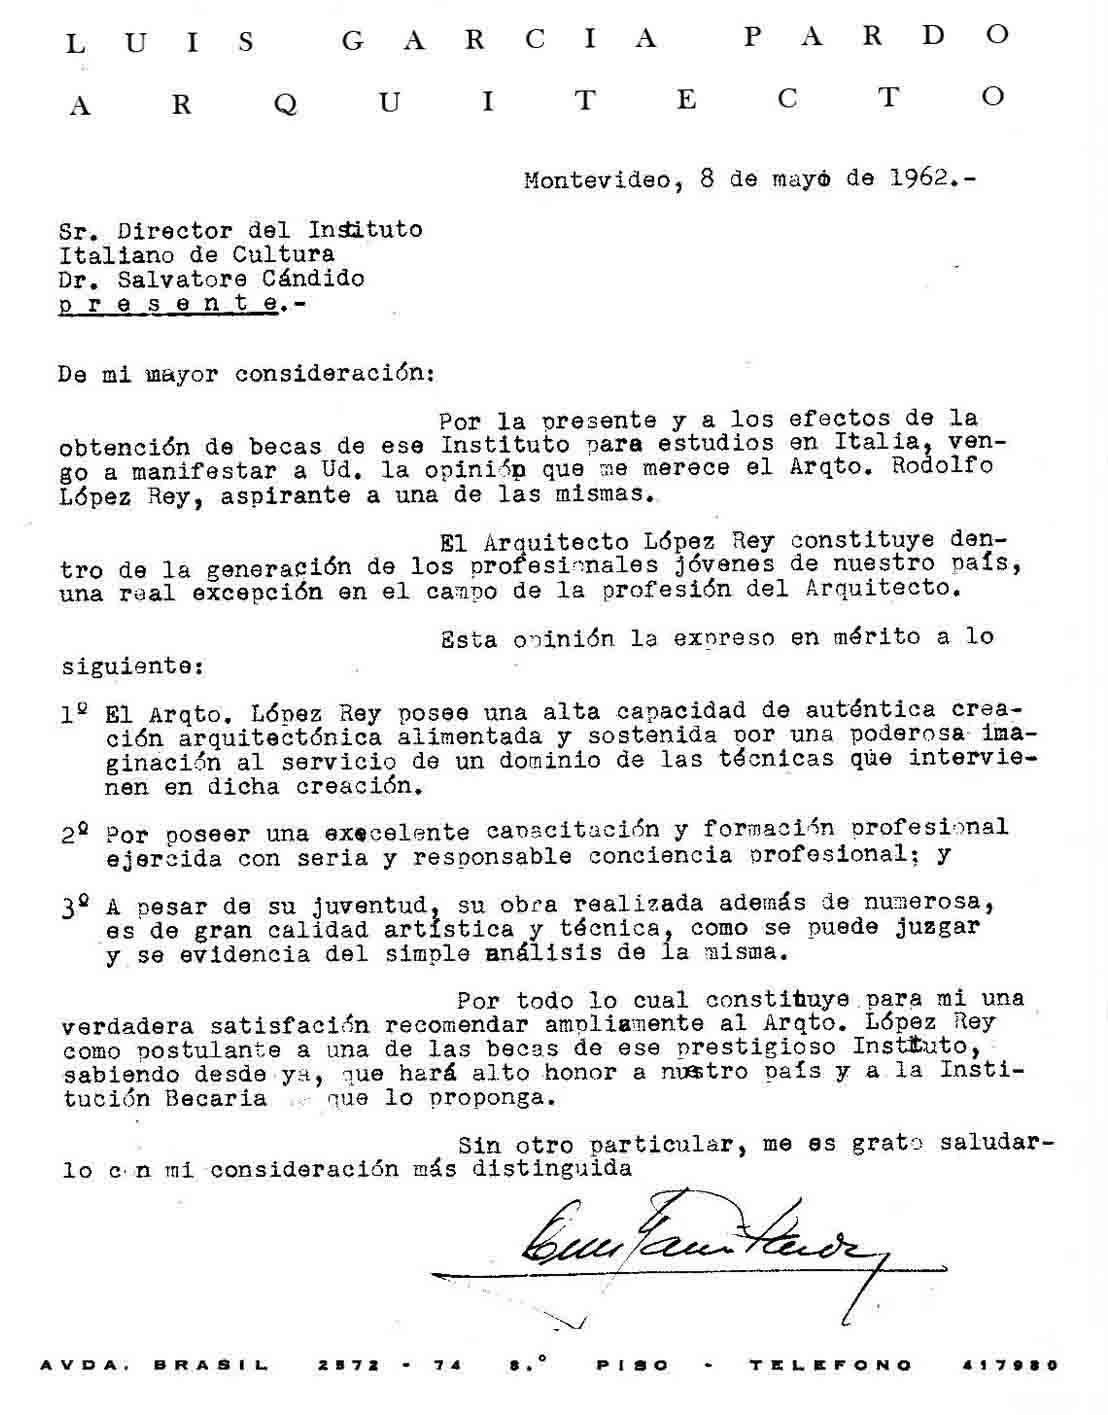 Carta del Arq. Luis García Pardo